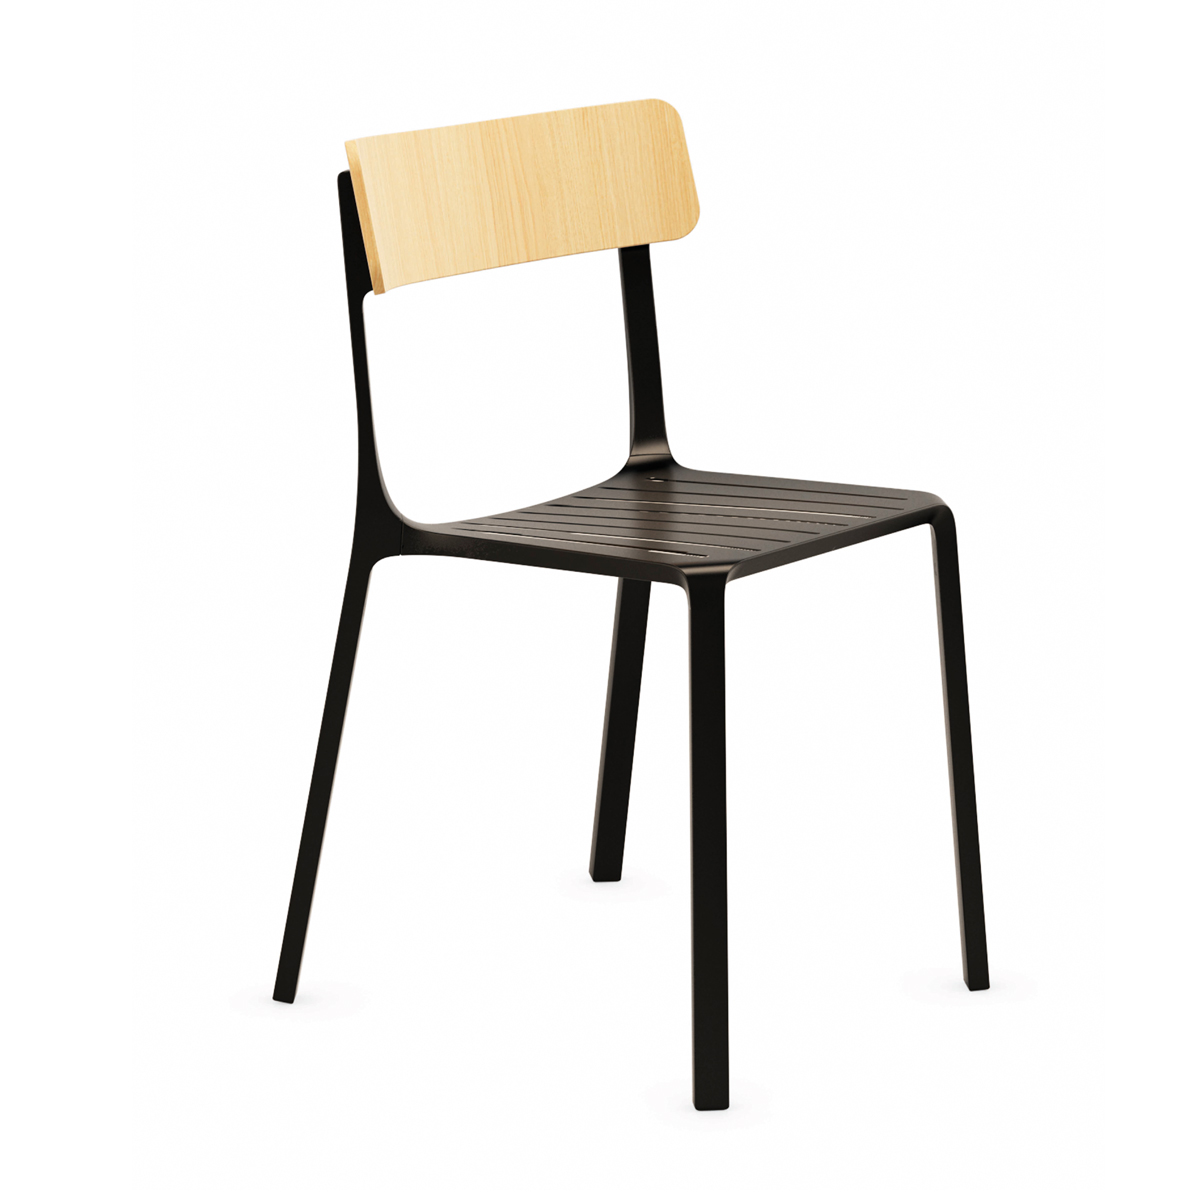 Design stoel met houten zitting